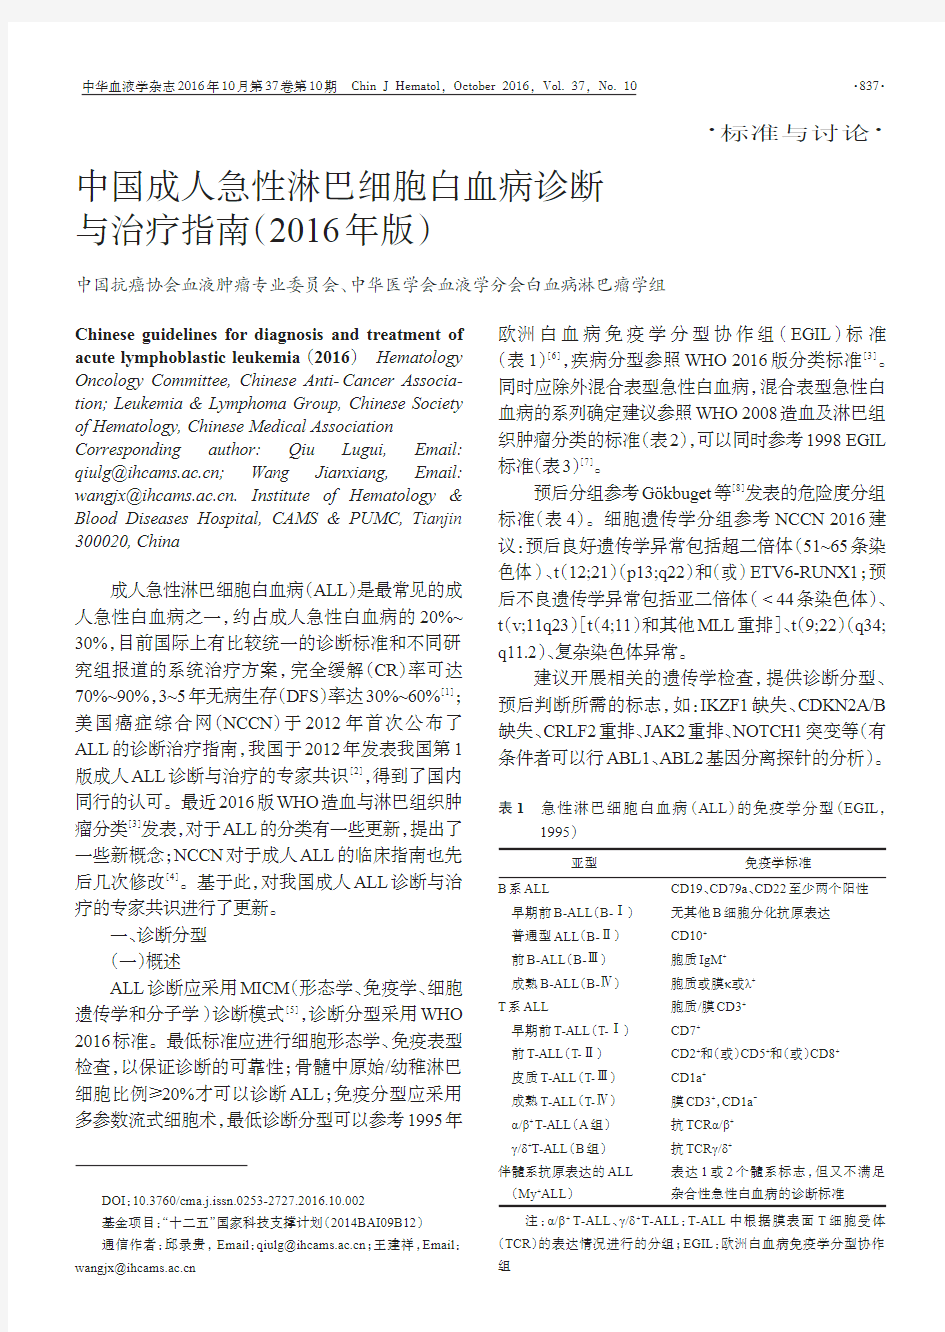 中国成人急性淋巴细胞白血病诊断与治疗指南(2016年版)